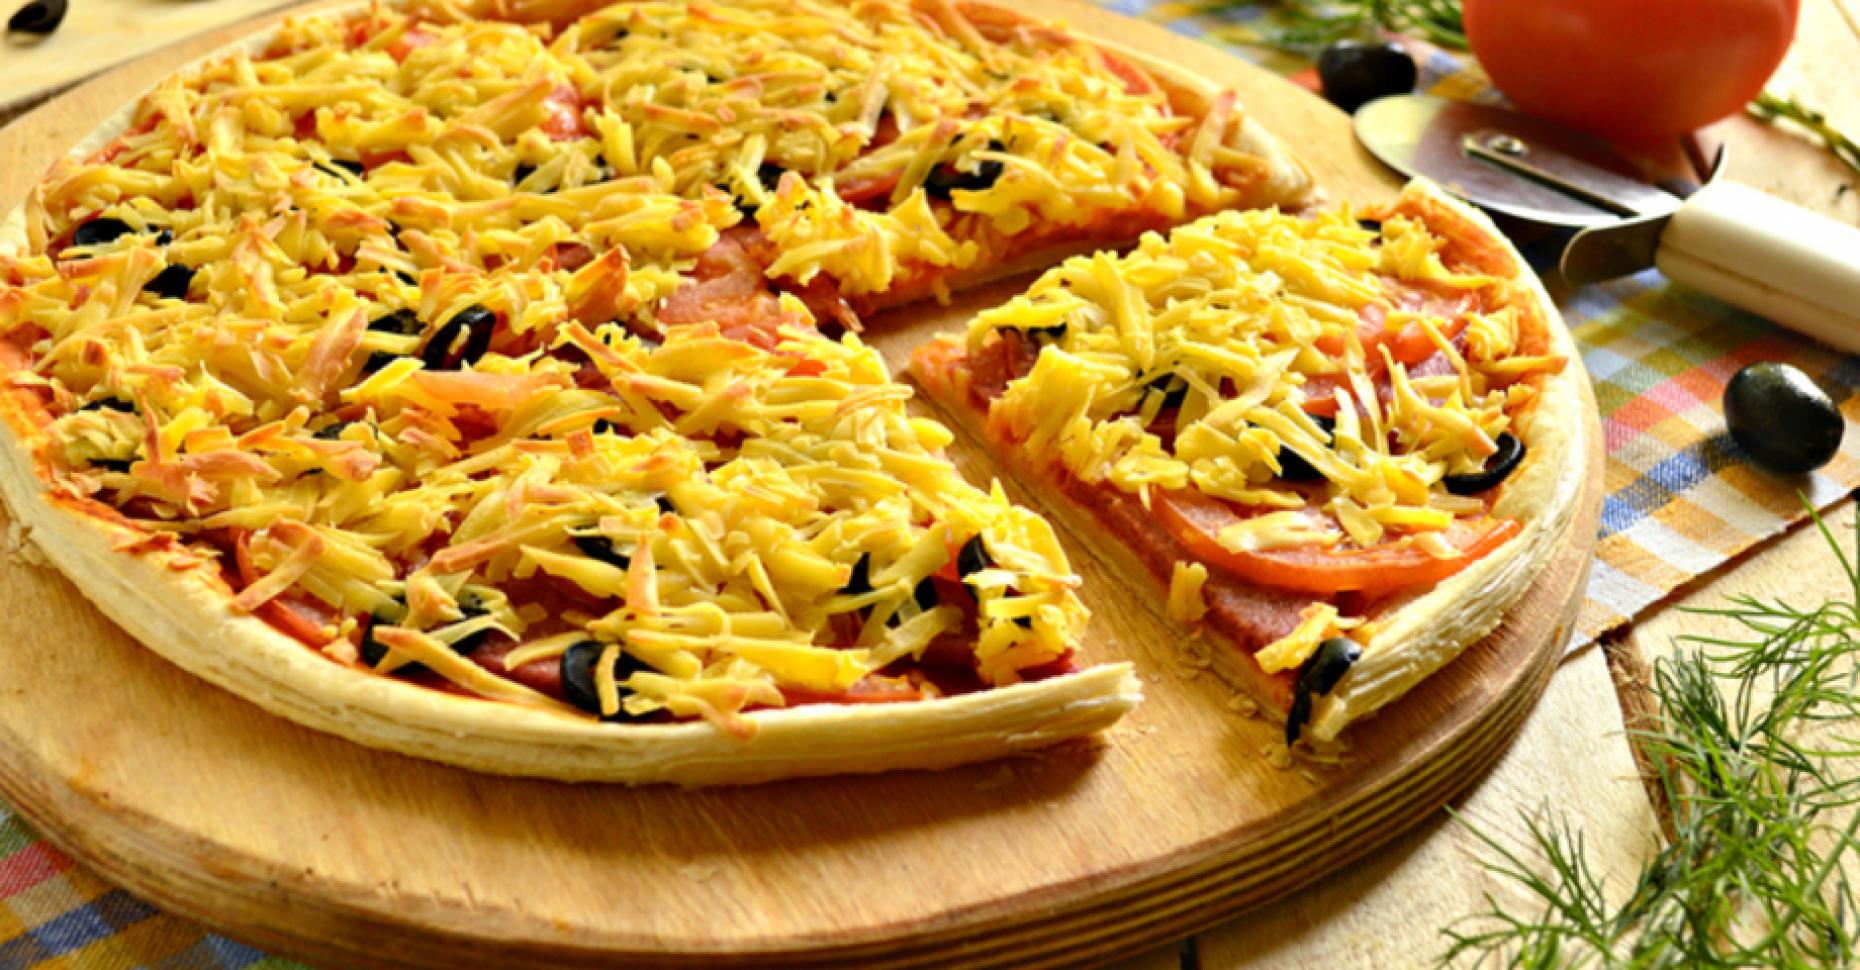 пицца домашняя рецепт приготовления с фото пошагово с колбасой и сыром фото 73